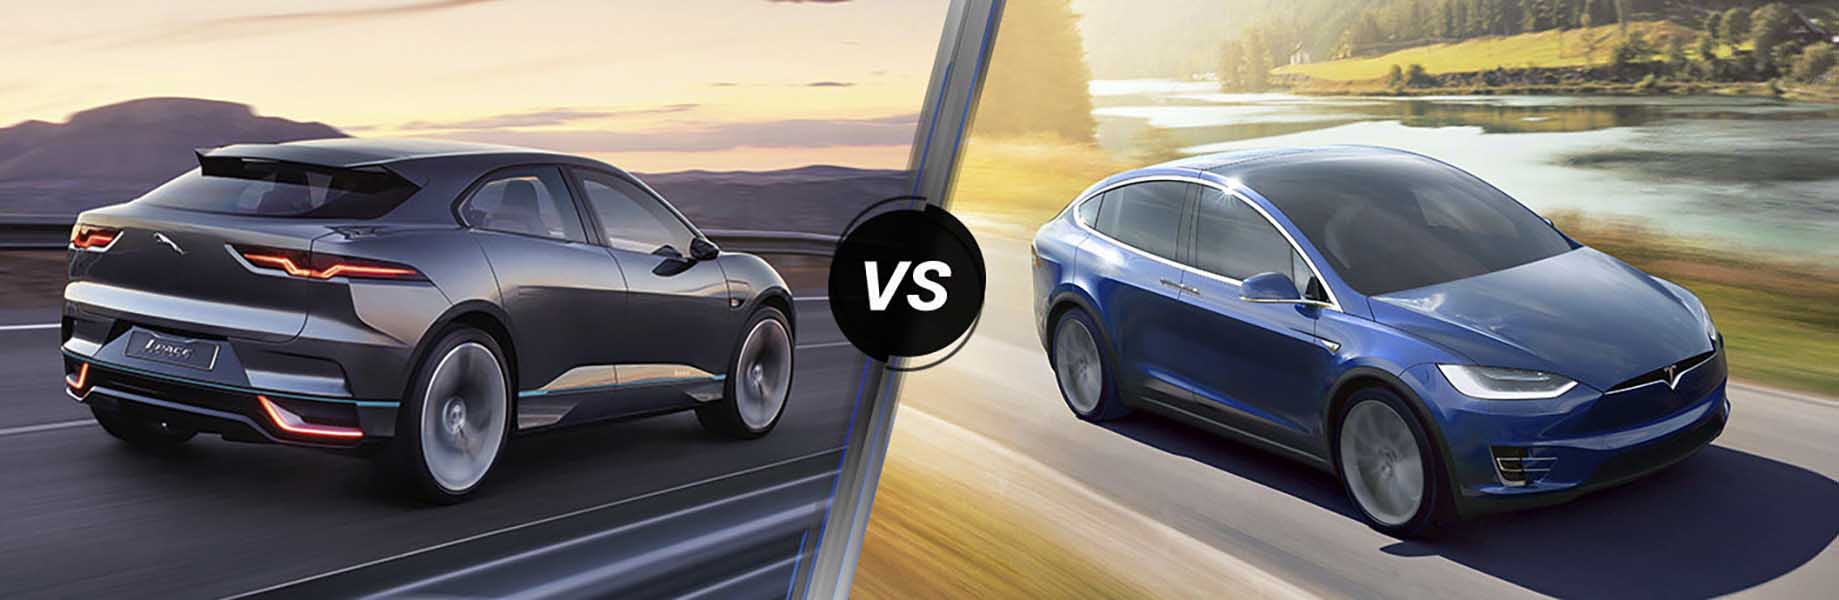 Jaguar I-Pace vs Tesla Model X - Ai hơn ai? - 1